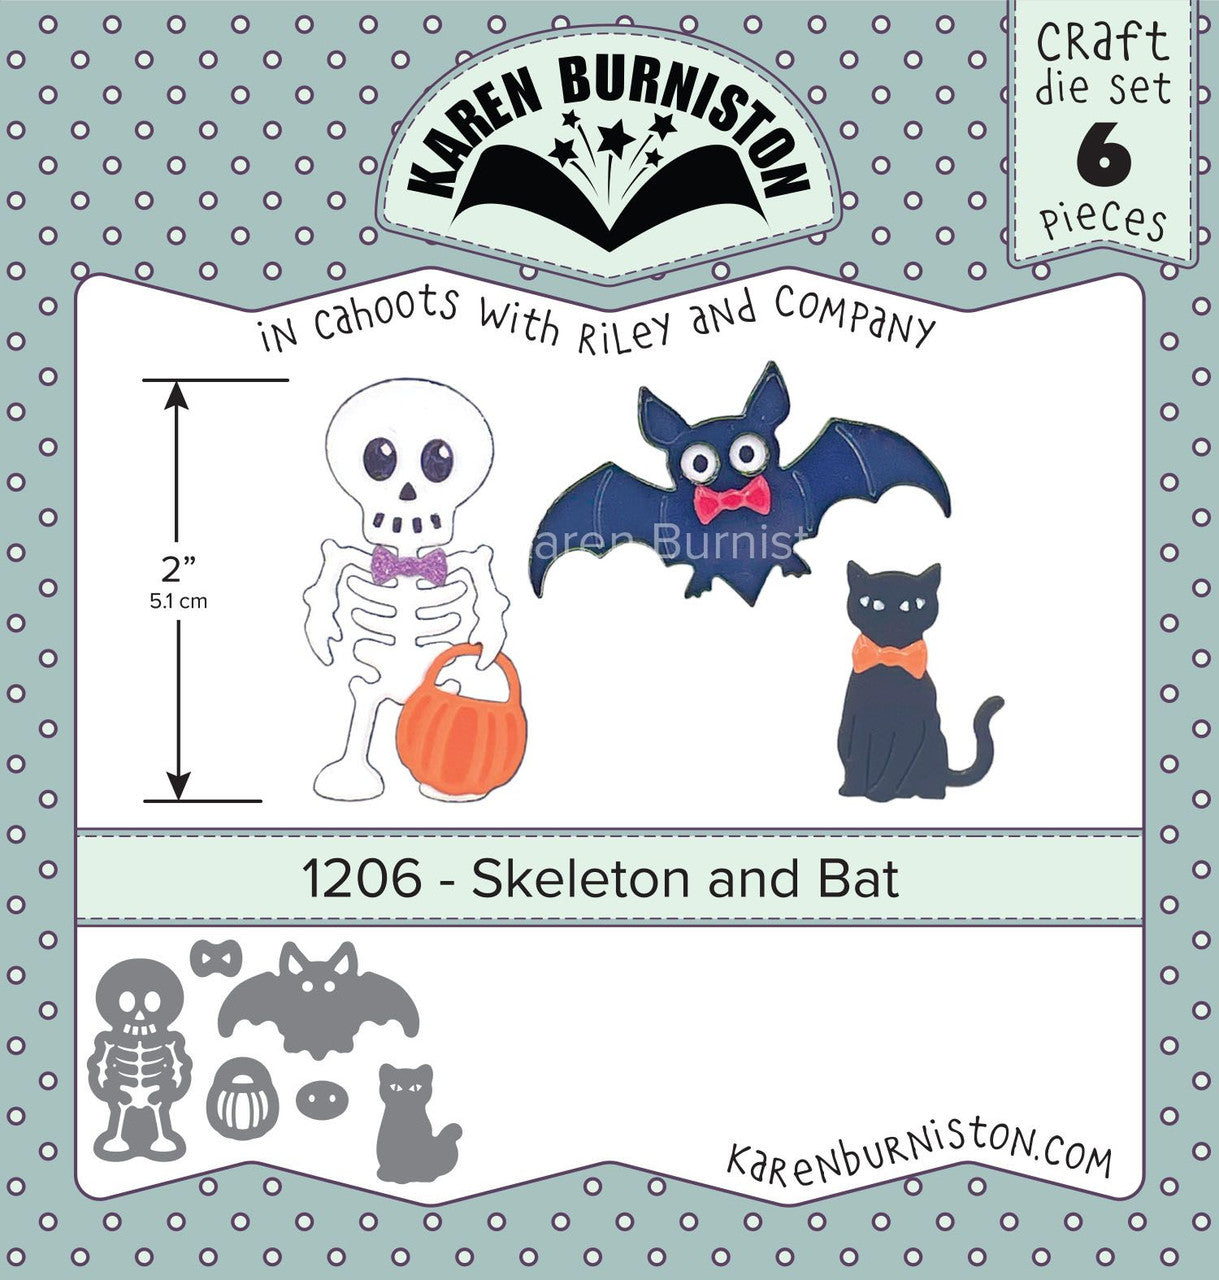 1206 Karen Burniston - Skeleton And Bat